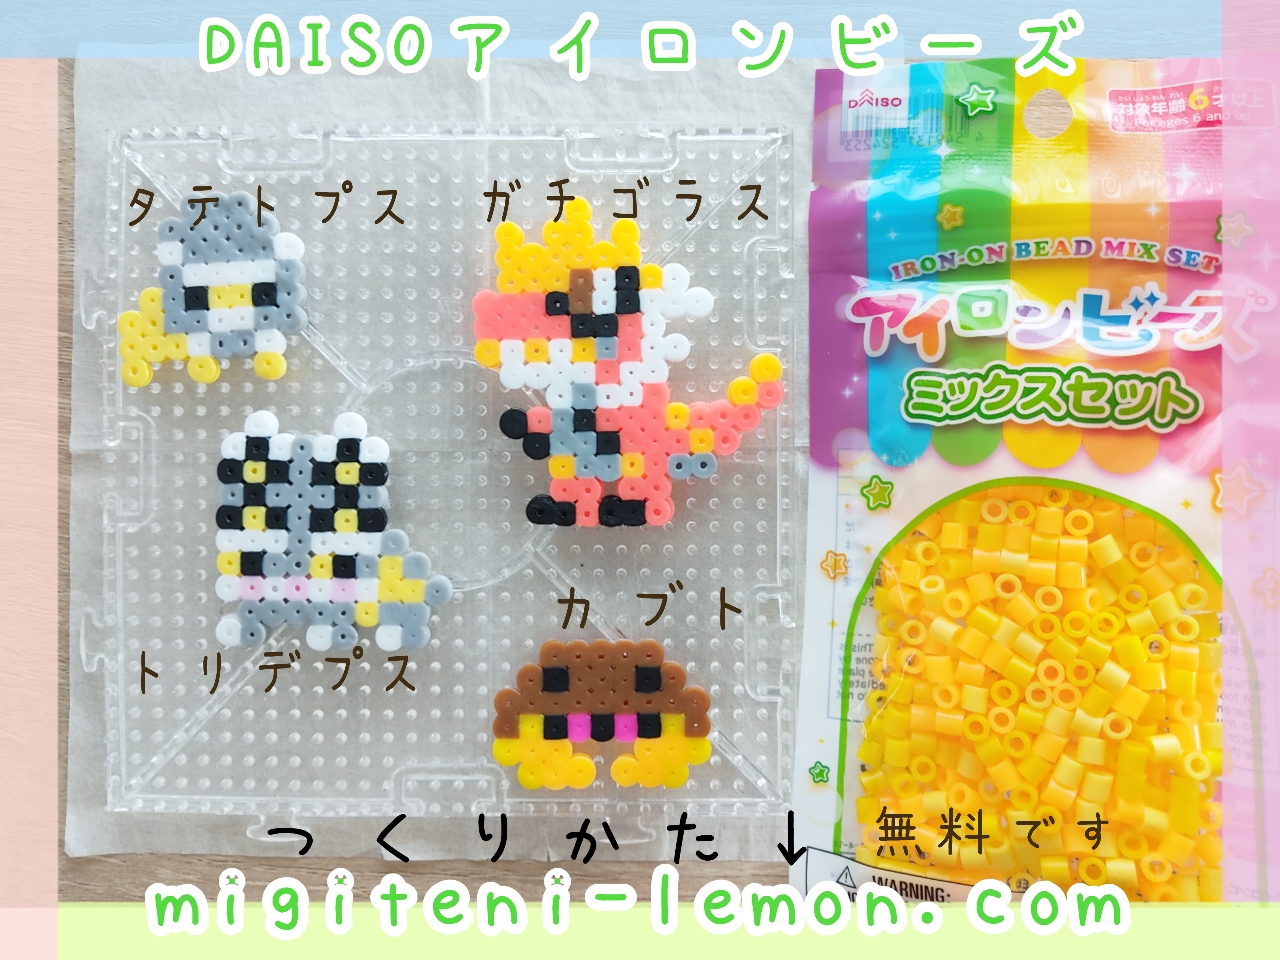 gachigoras-tyrantrum-kabuto-kaseki-dinosaur-pokemon-handmade-small-kawaii-square-iron-beads-free-zuan-daiso